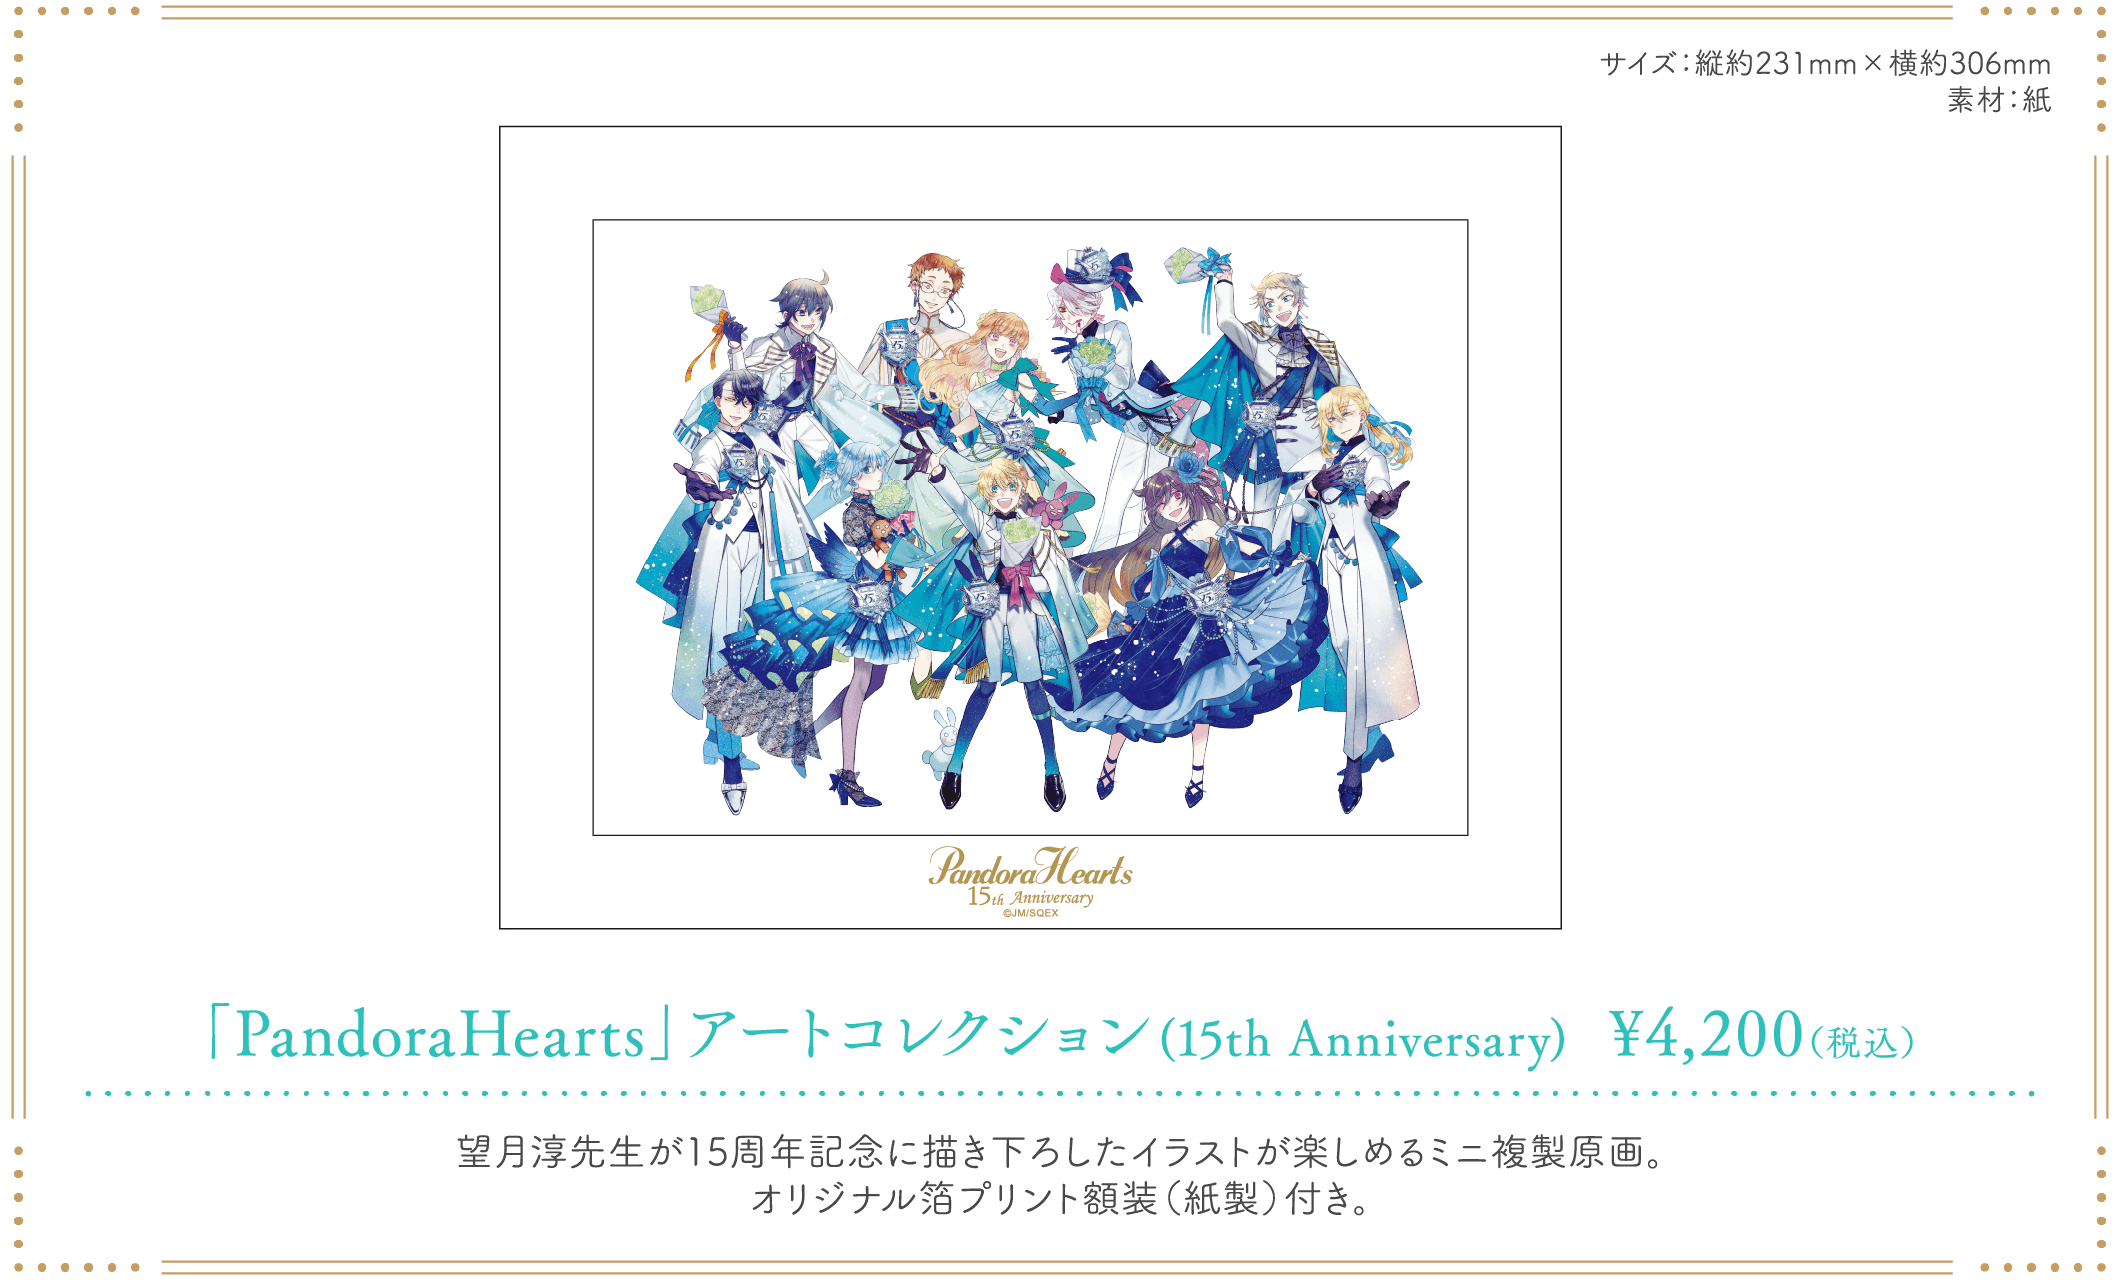 「PandoraHearts 15th Anniversary Cafe」アートコレクション